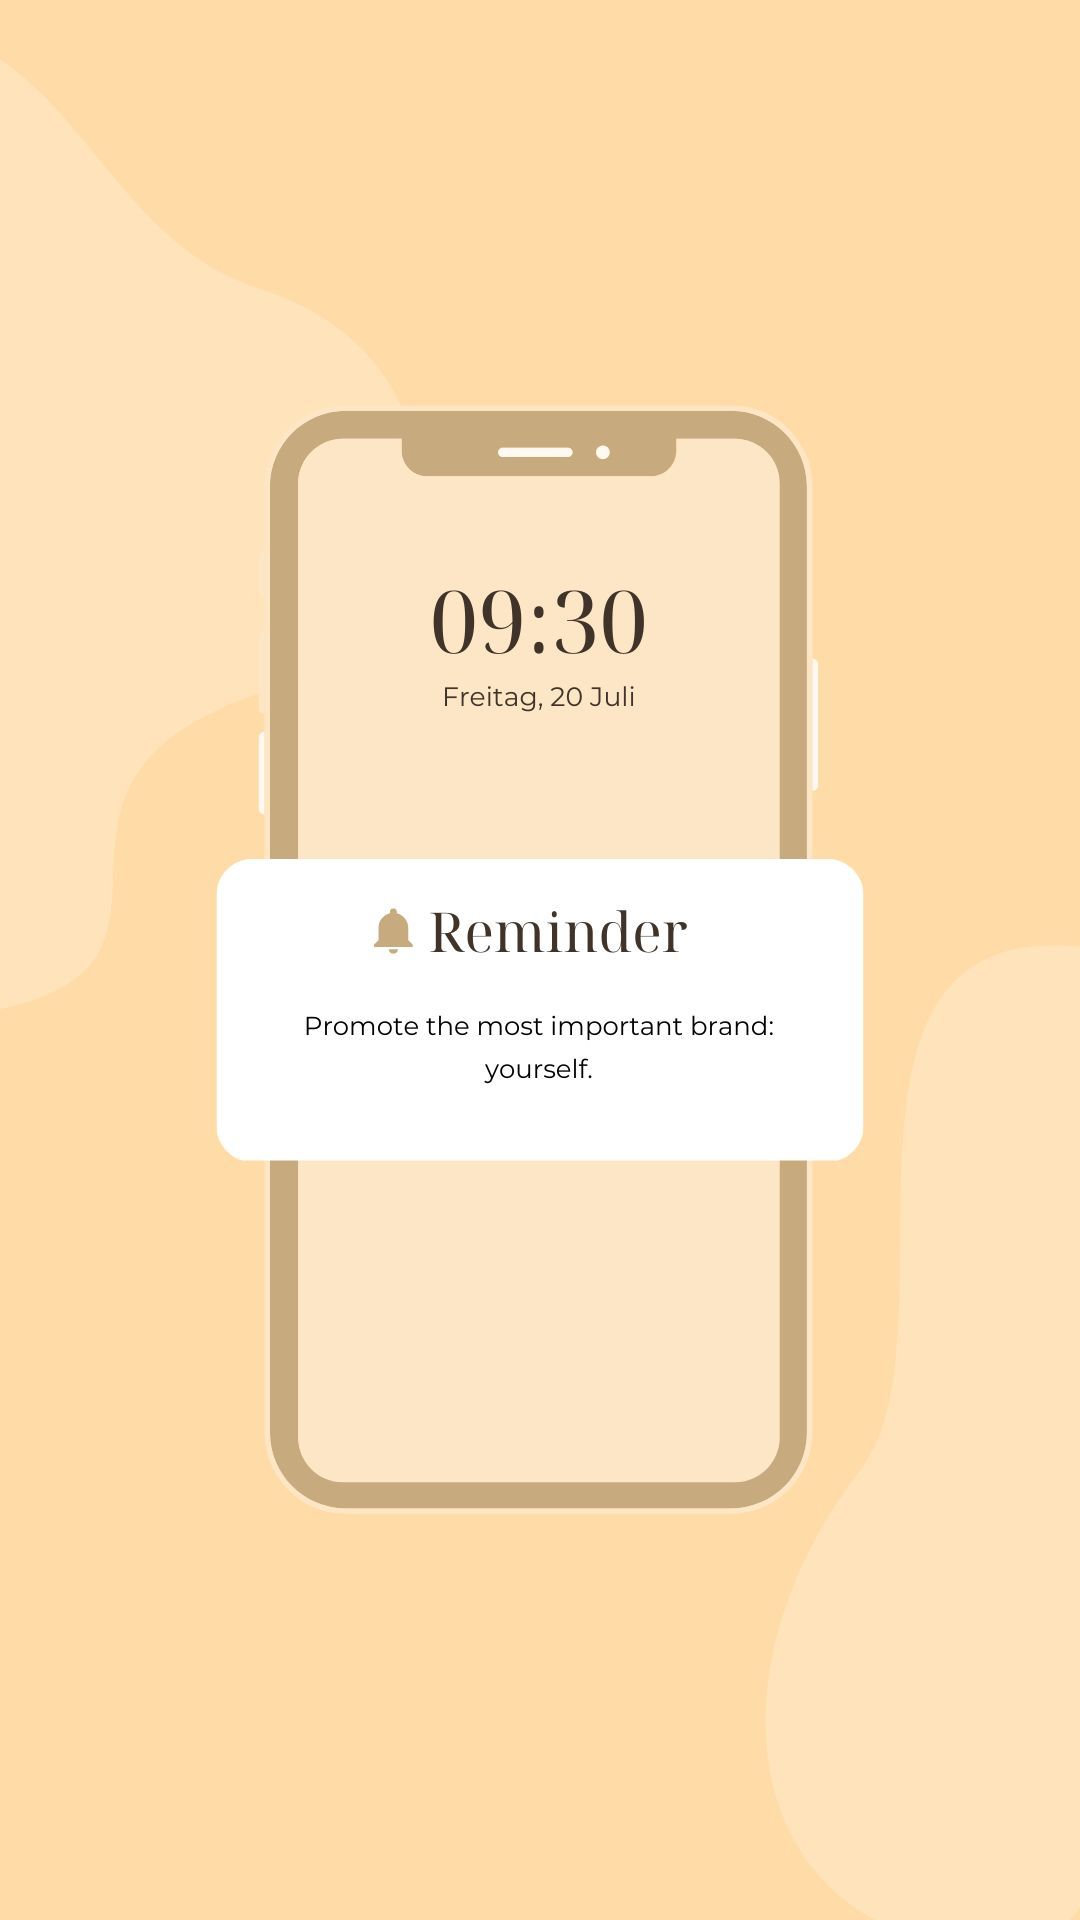 Gelb Beige Minimalistisch Handy Mockup Reminder Instagram Story